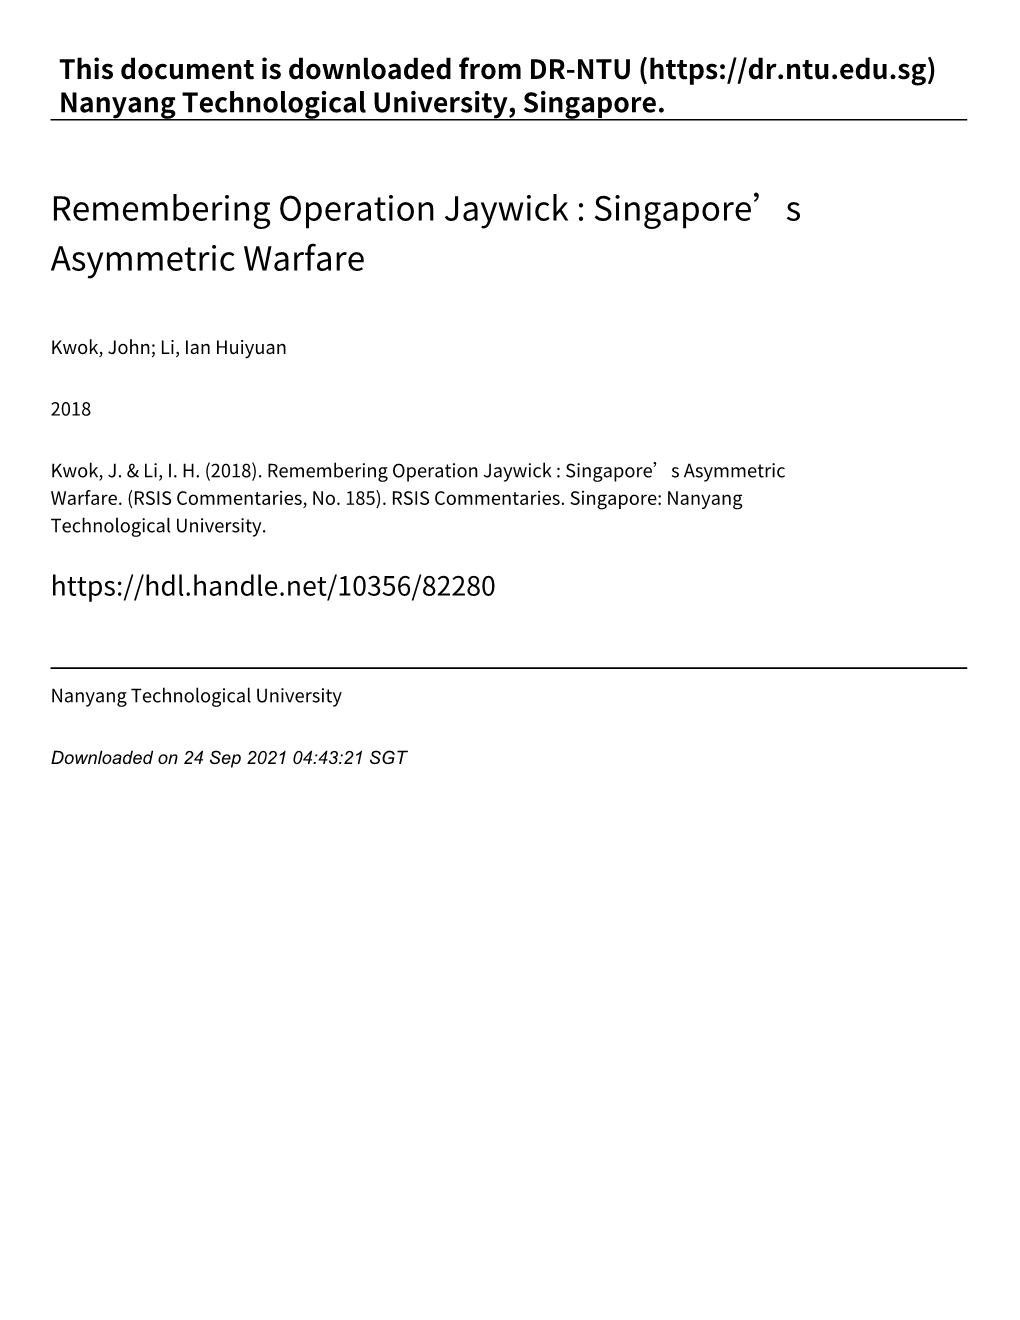 Remembering Operation Jaywick : Singapore's Asymmetric Warfare